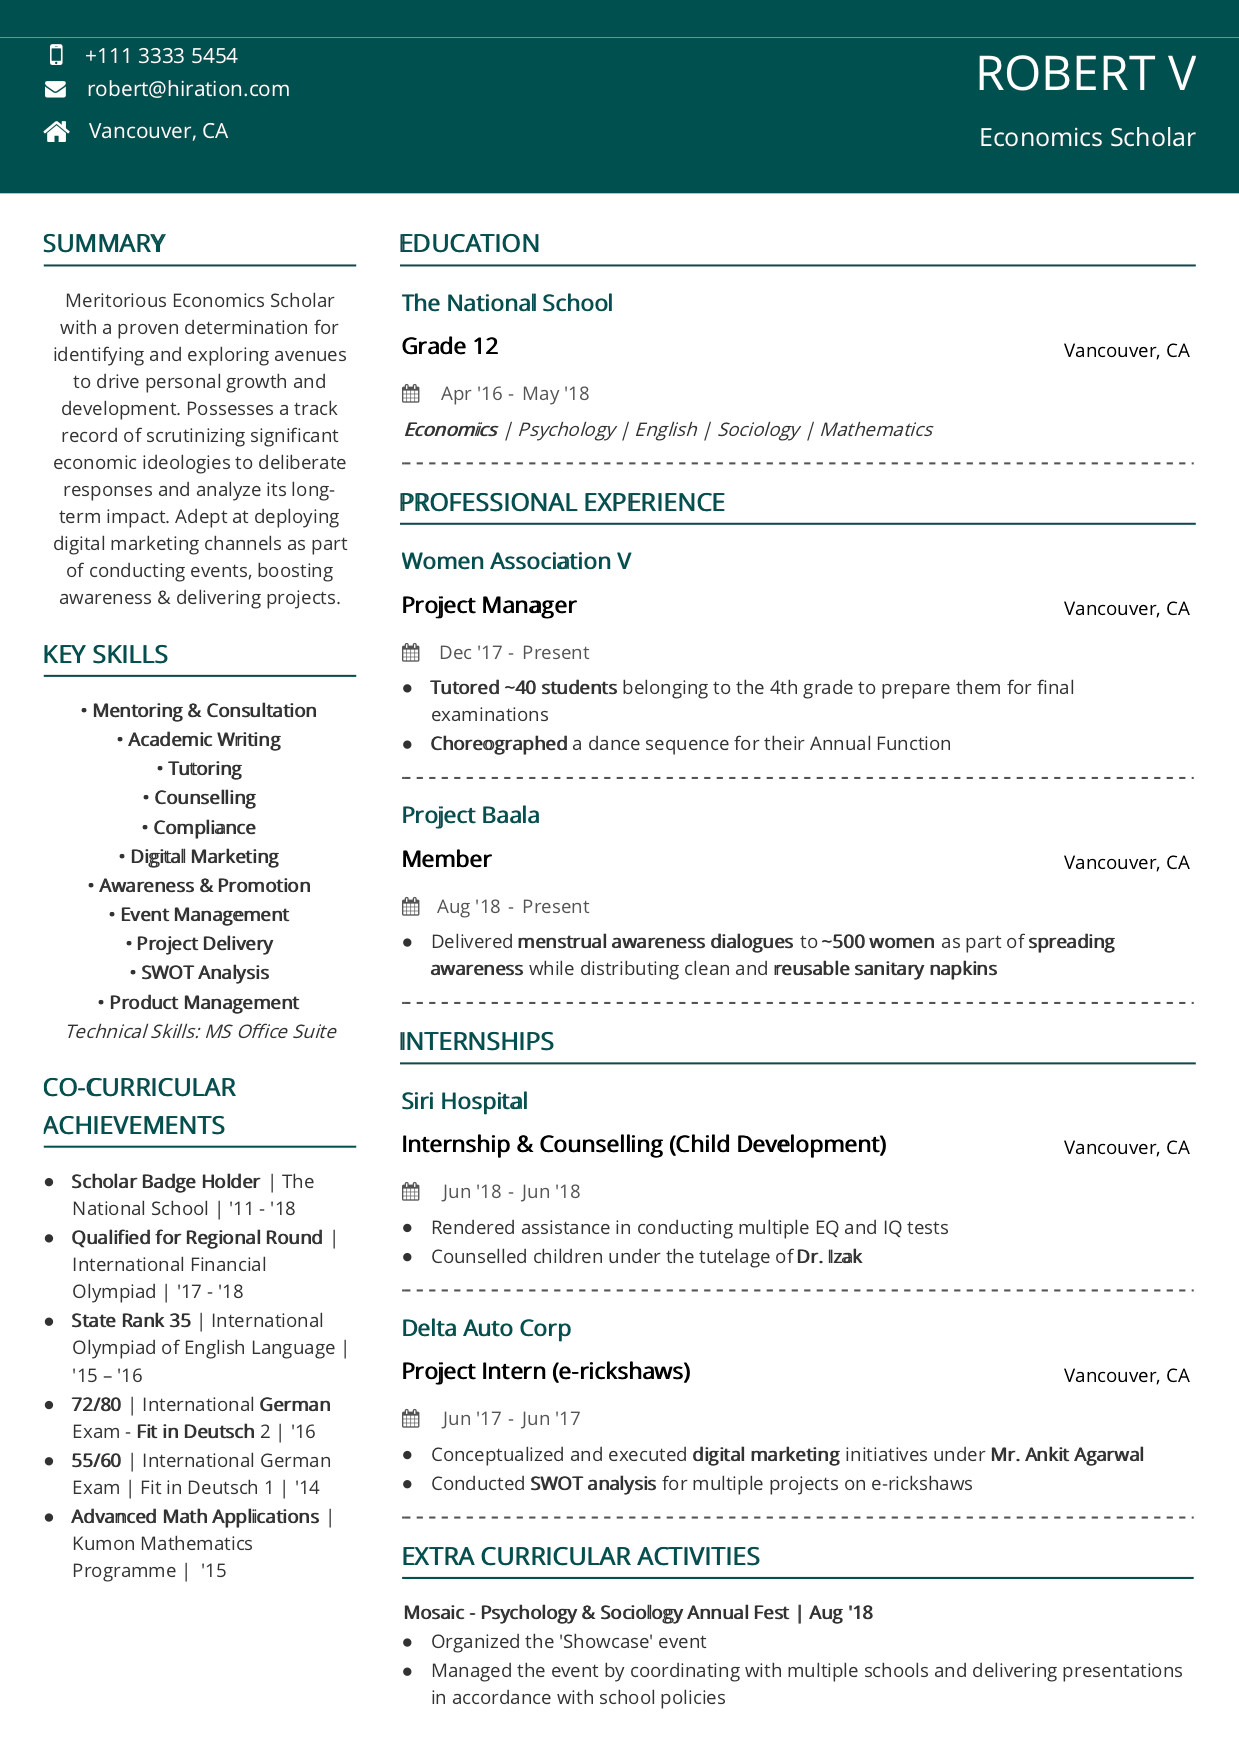 Sample Student Resume for Scholarship Application Scholarship Resume [2020 Guide with Scholarship Examples